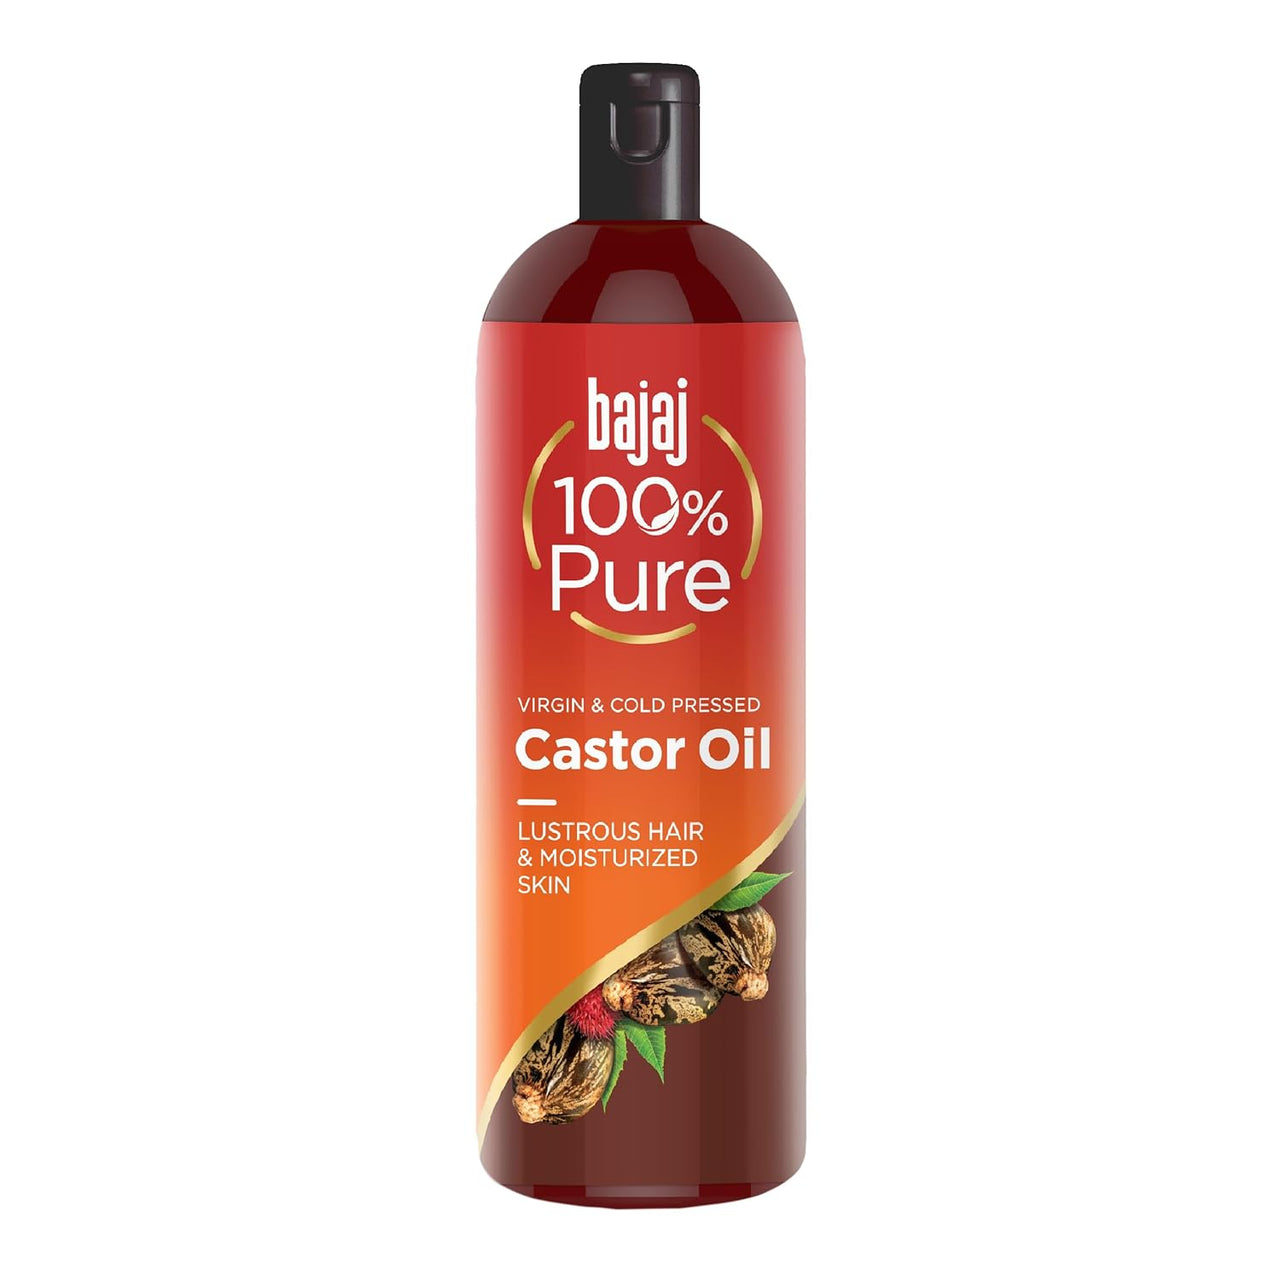 Bajaj 100% Pure Castor Oil